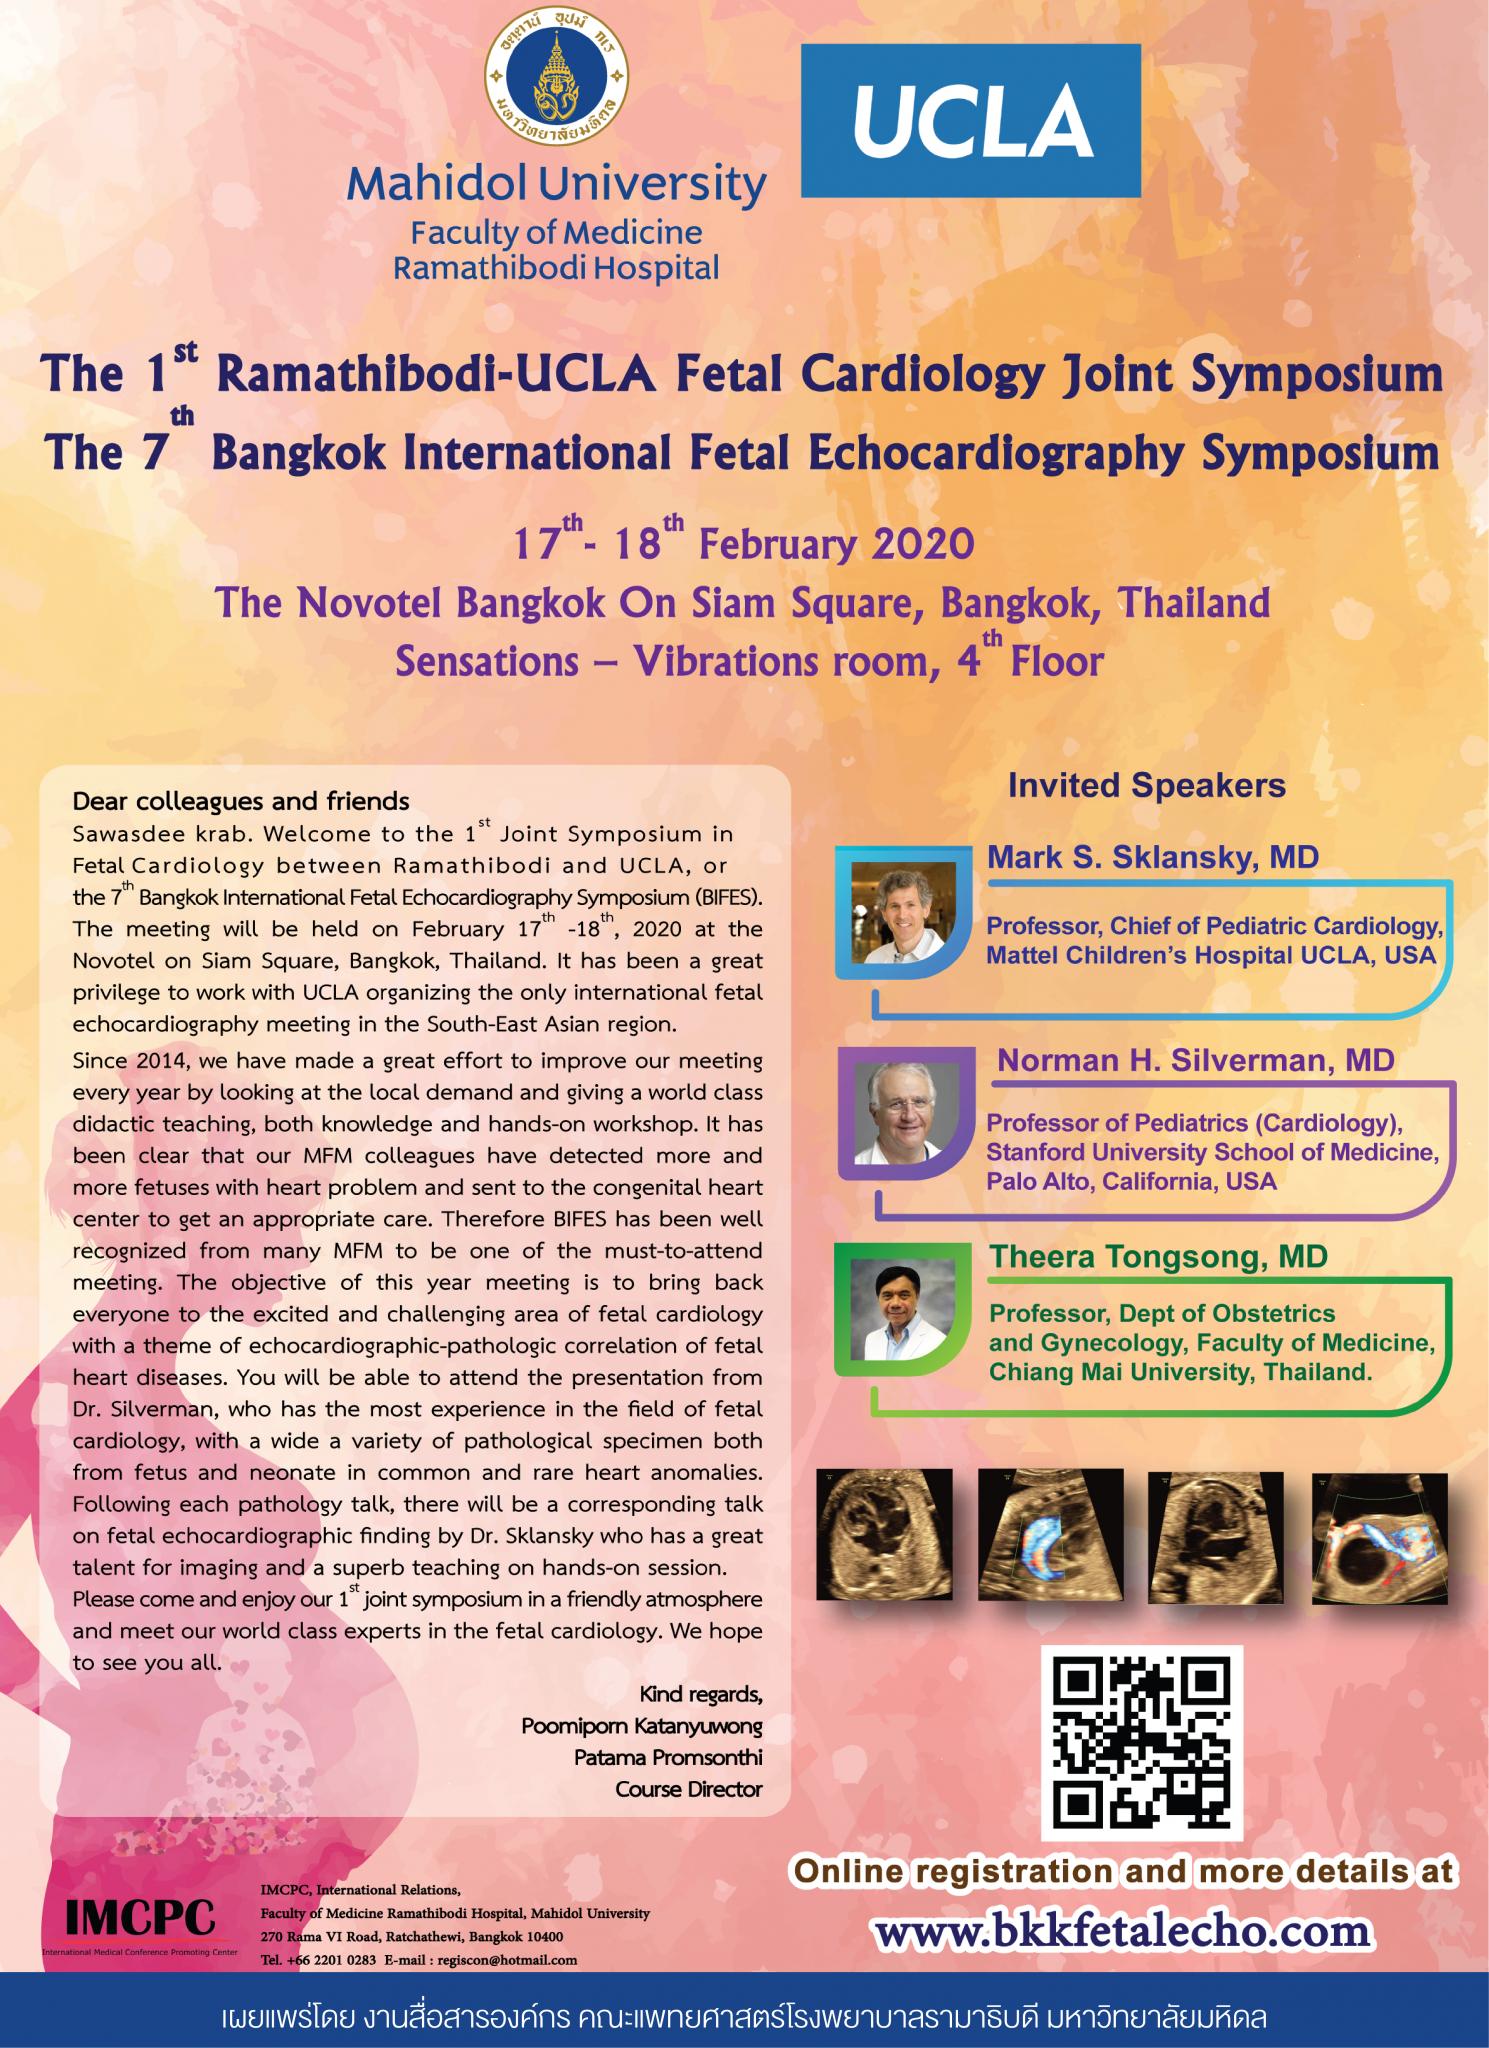 The 1st Ramathibodi - UCLA Fetal Cardiology Joint Symposium, The 7th Bangkok International Fetal Echocardiography Symposium